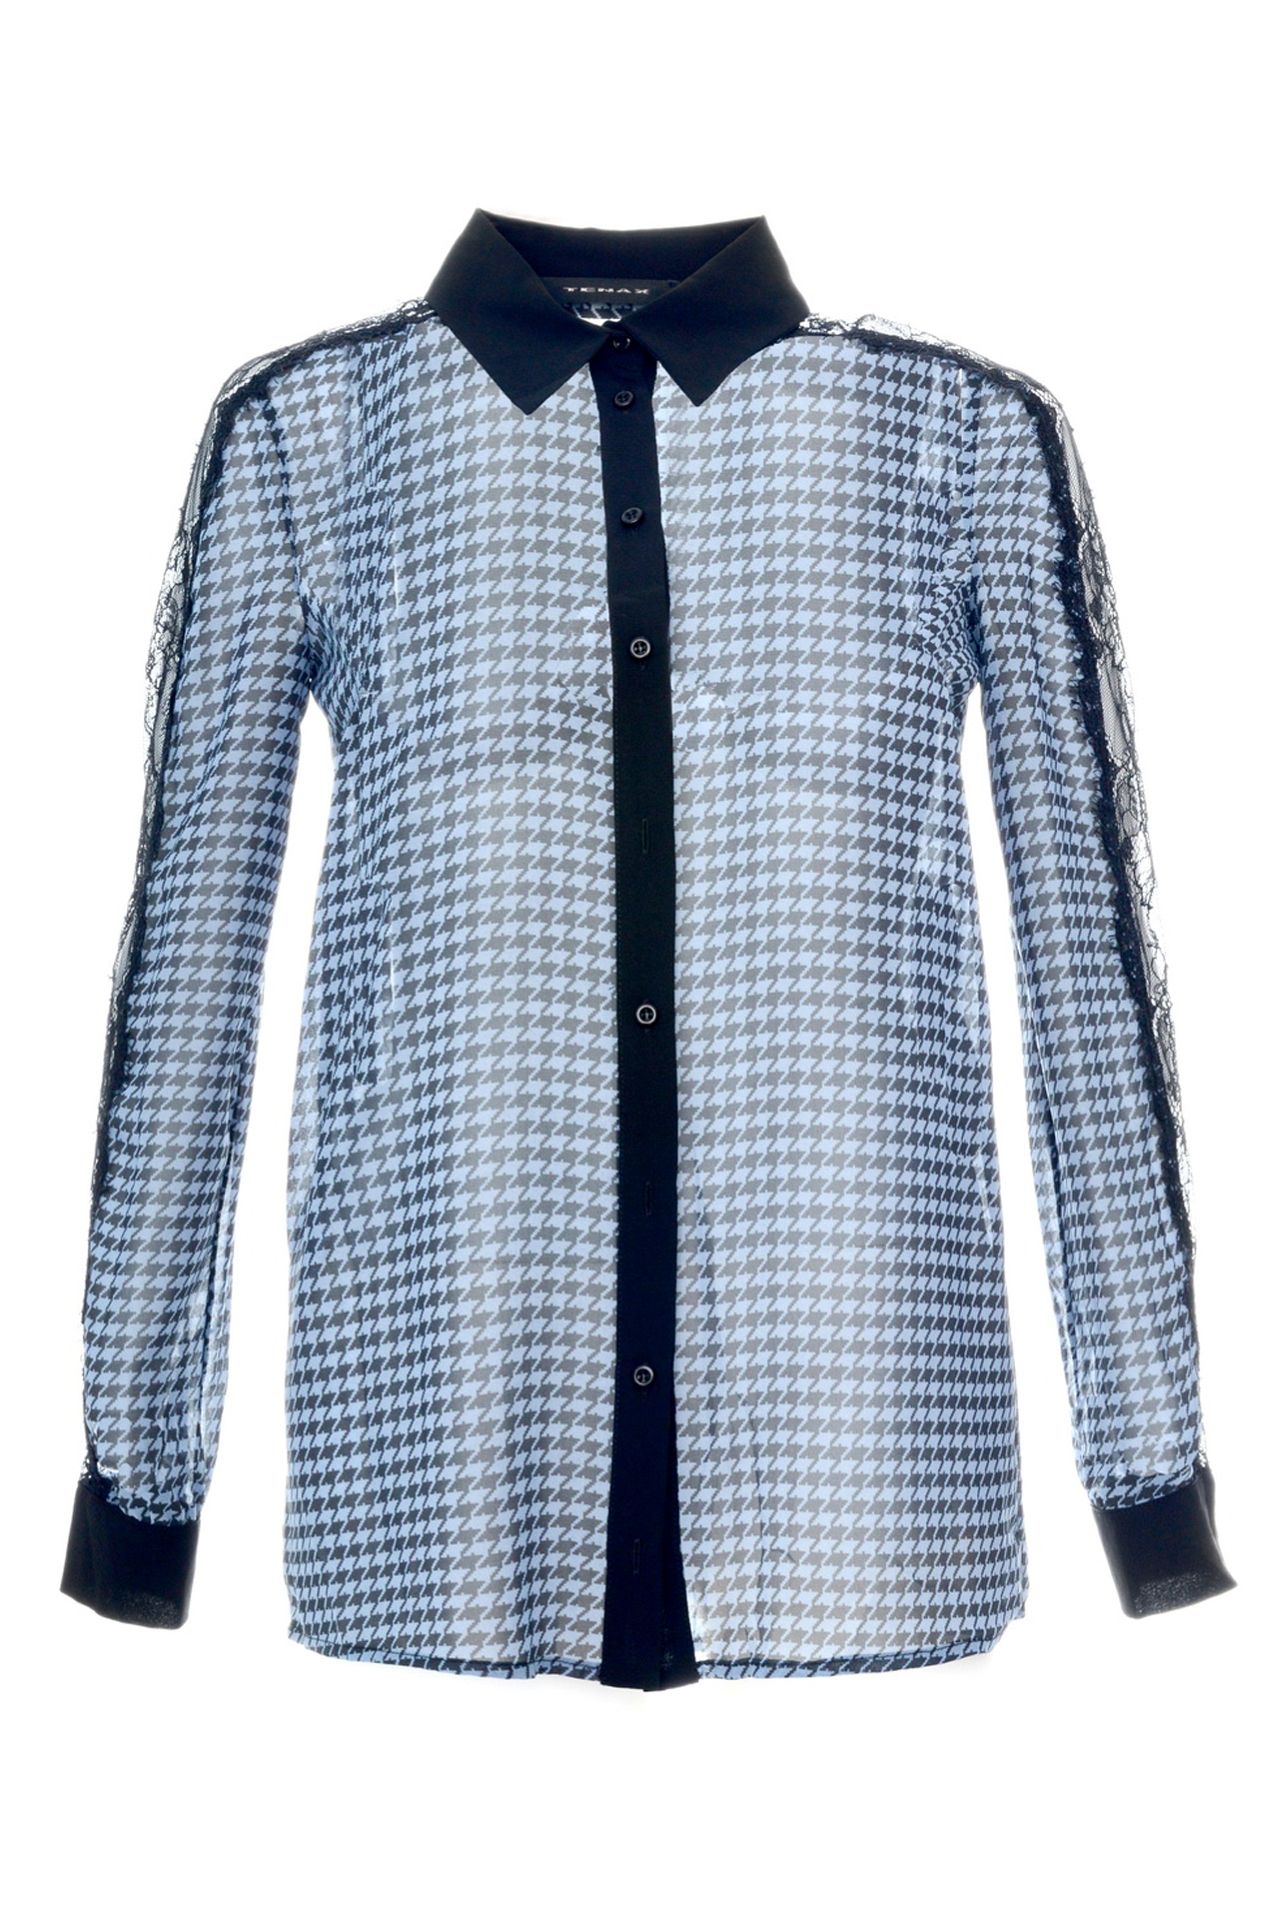 Одежда женская Блузка TENAX (I133001/14.1). Купить за 4950 руб.